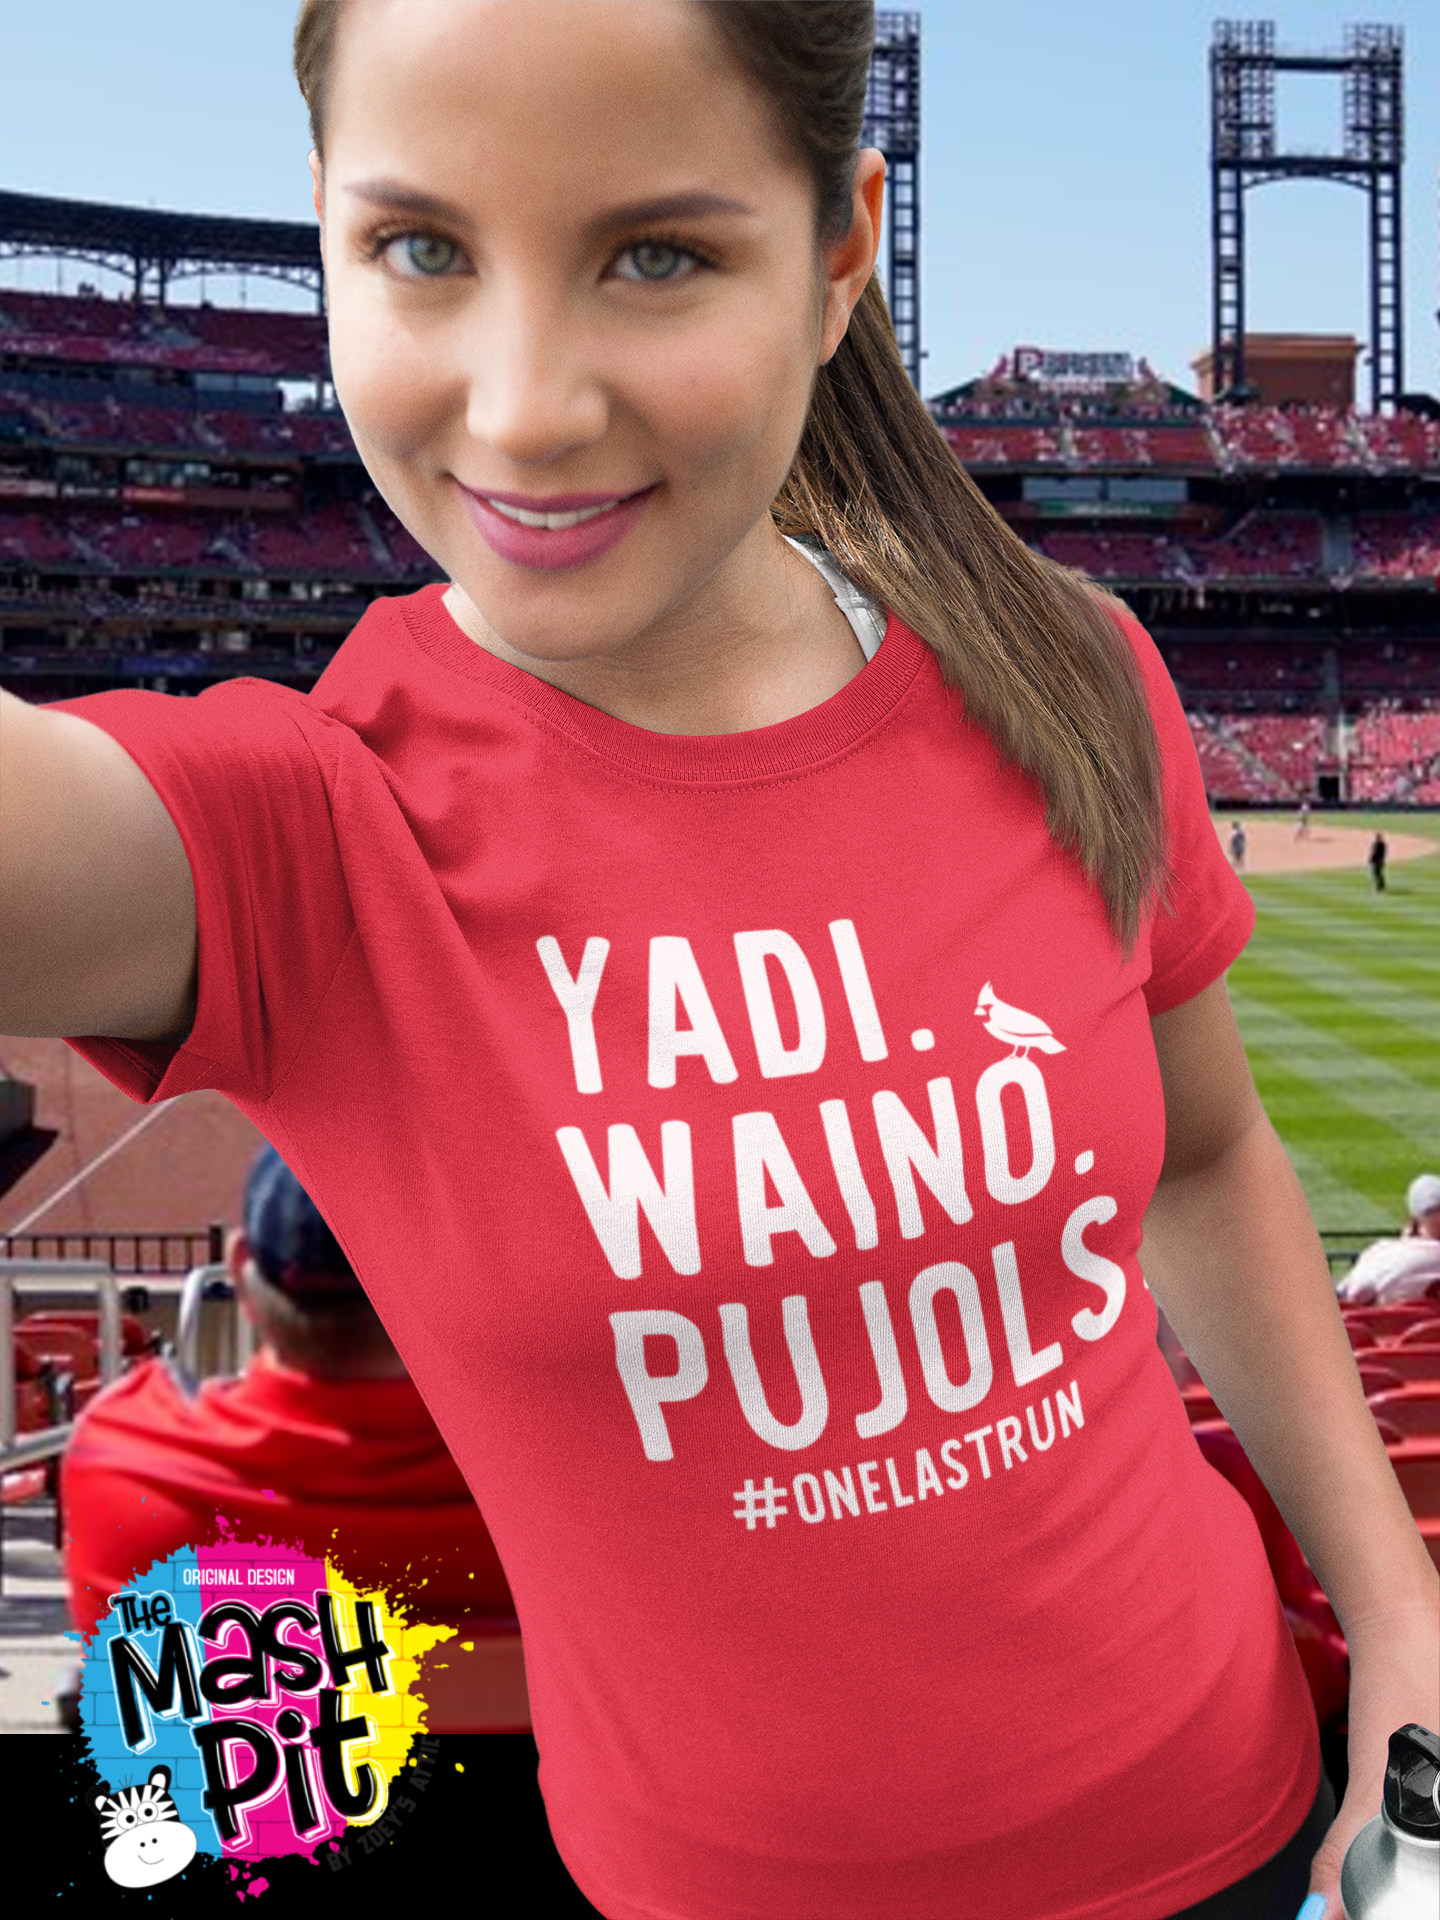 Baseball St Louis Cardinals The Last Run 2022 Unisex T-Shirt